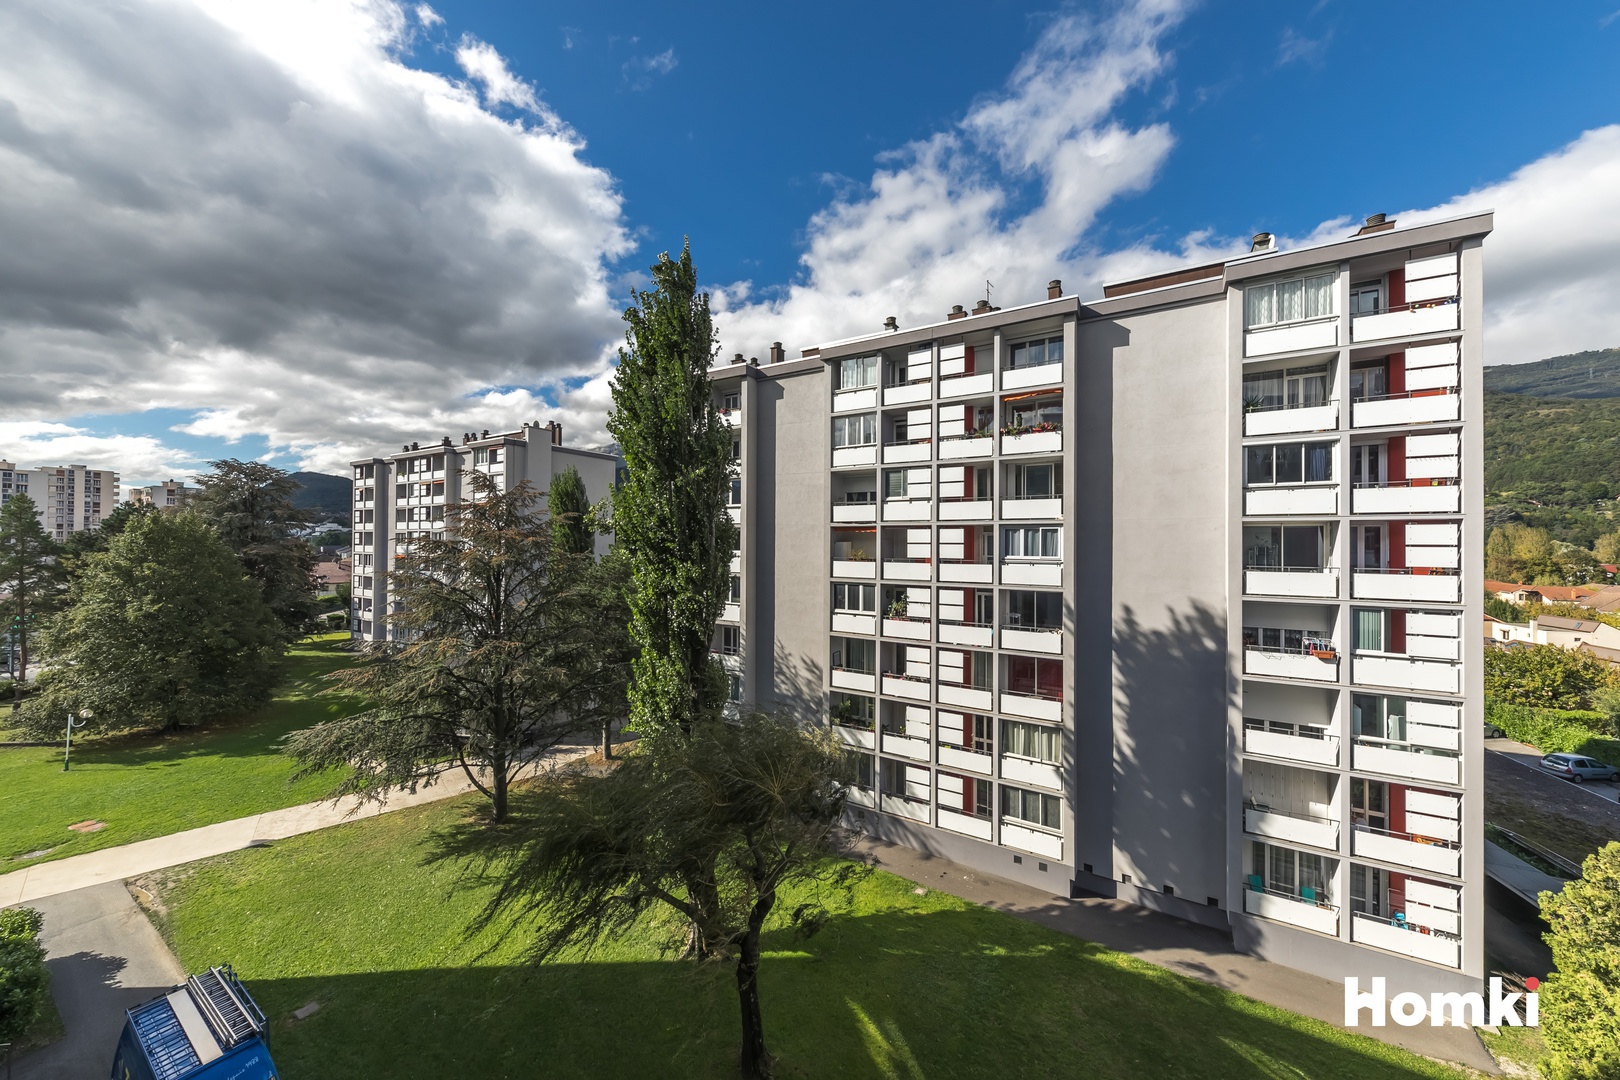 Homki - Vente Appartement  de 82.0 m² à Seyssinet-Pariset 38170